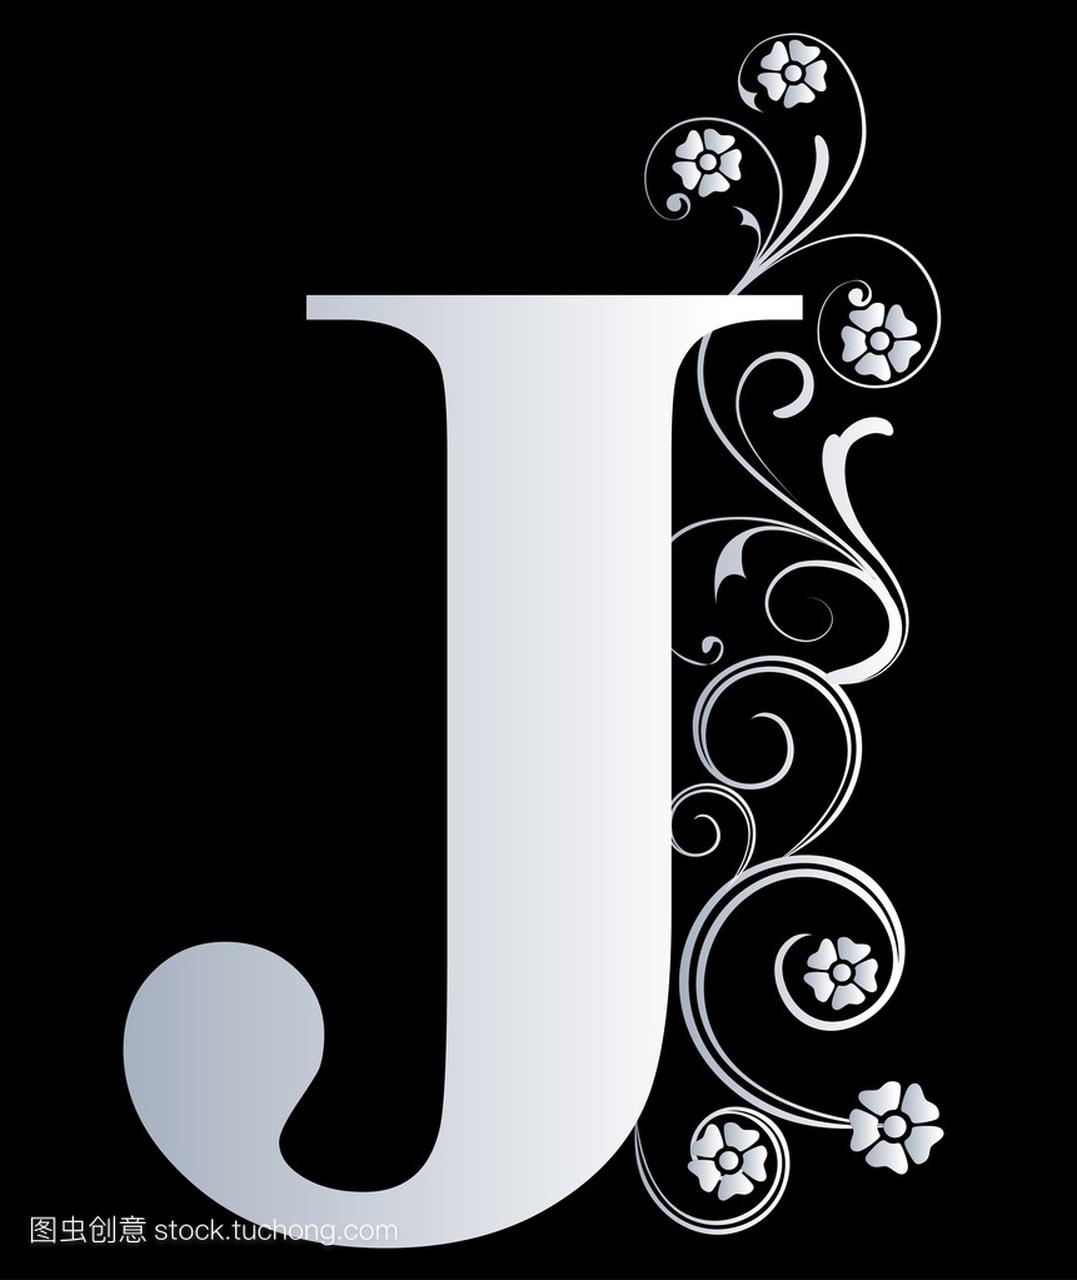 大写字母 j